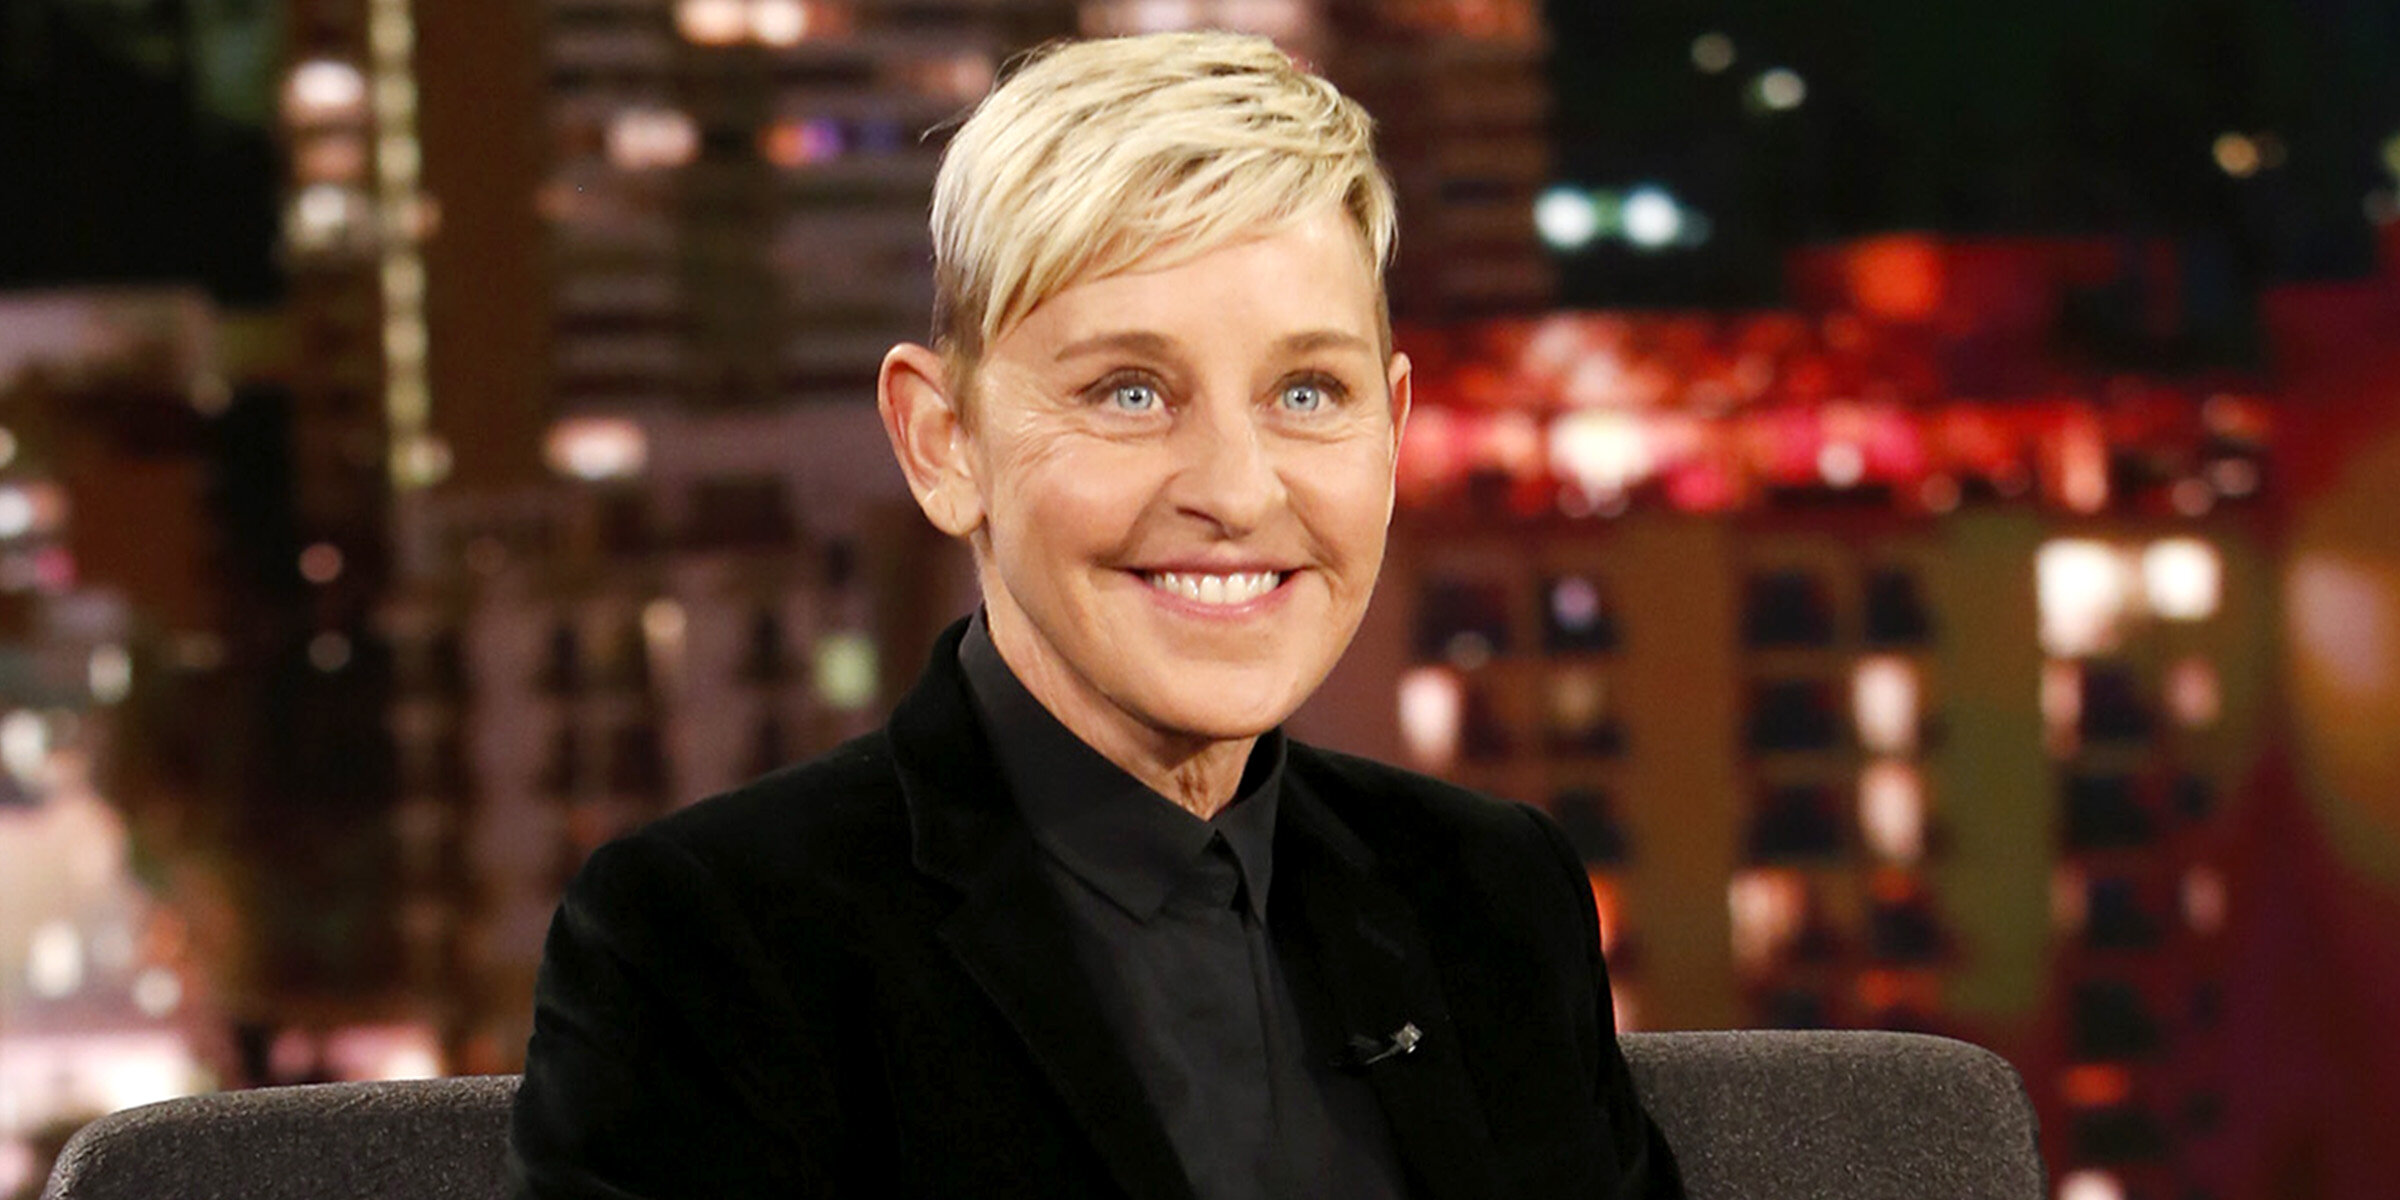 El show de Ellen DeGeneres, investigado por acoso profesional y racismo hacia empleados de su equipo